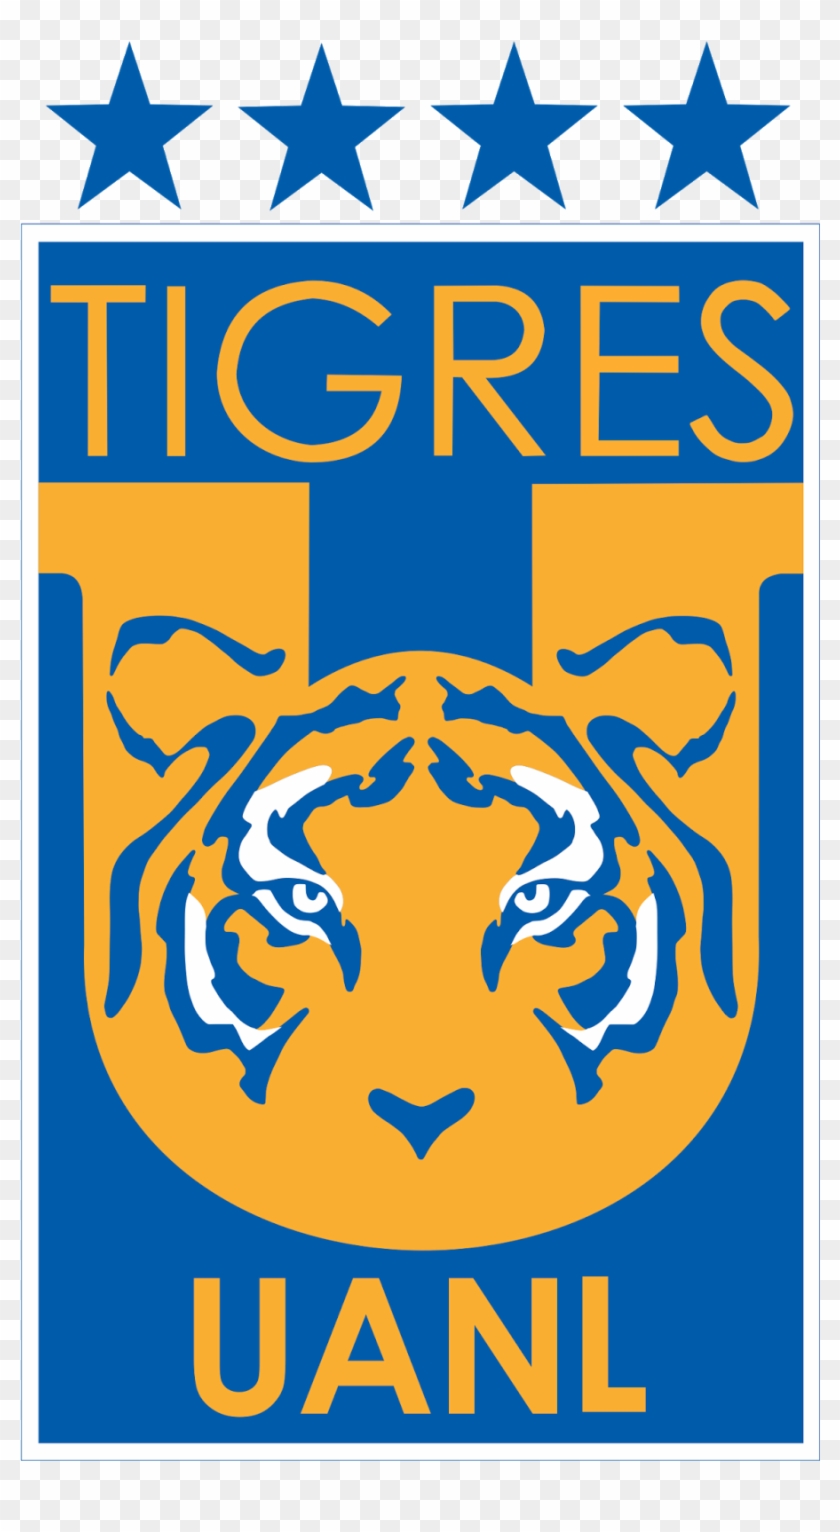 Nuevo Logotipo Del Equipo De Fútbol De La Liga Mx, - Tigres Uanl Clipart